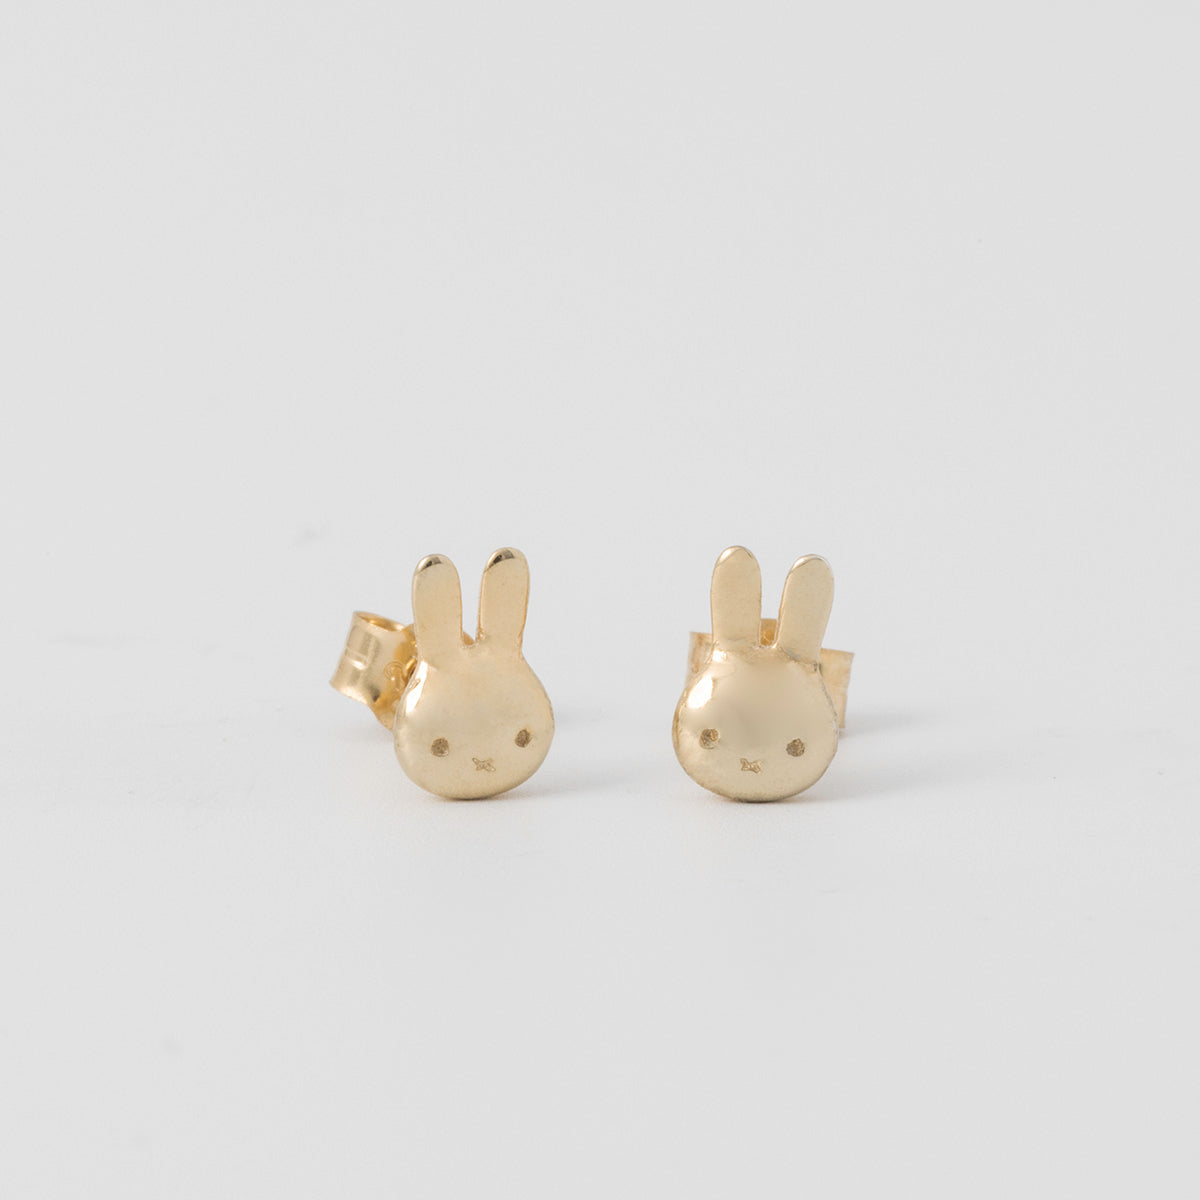 Miffy Stud Earrings 18ct Gold Vermeil